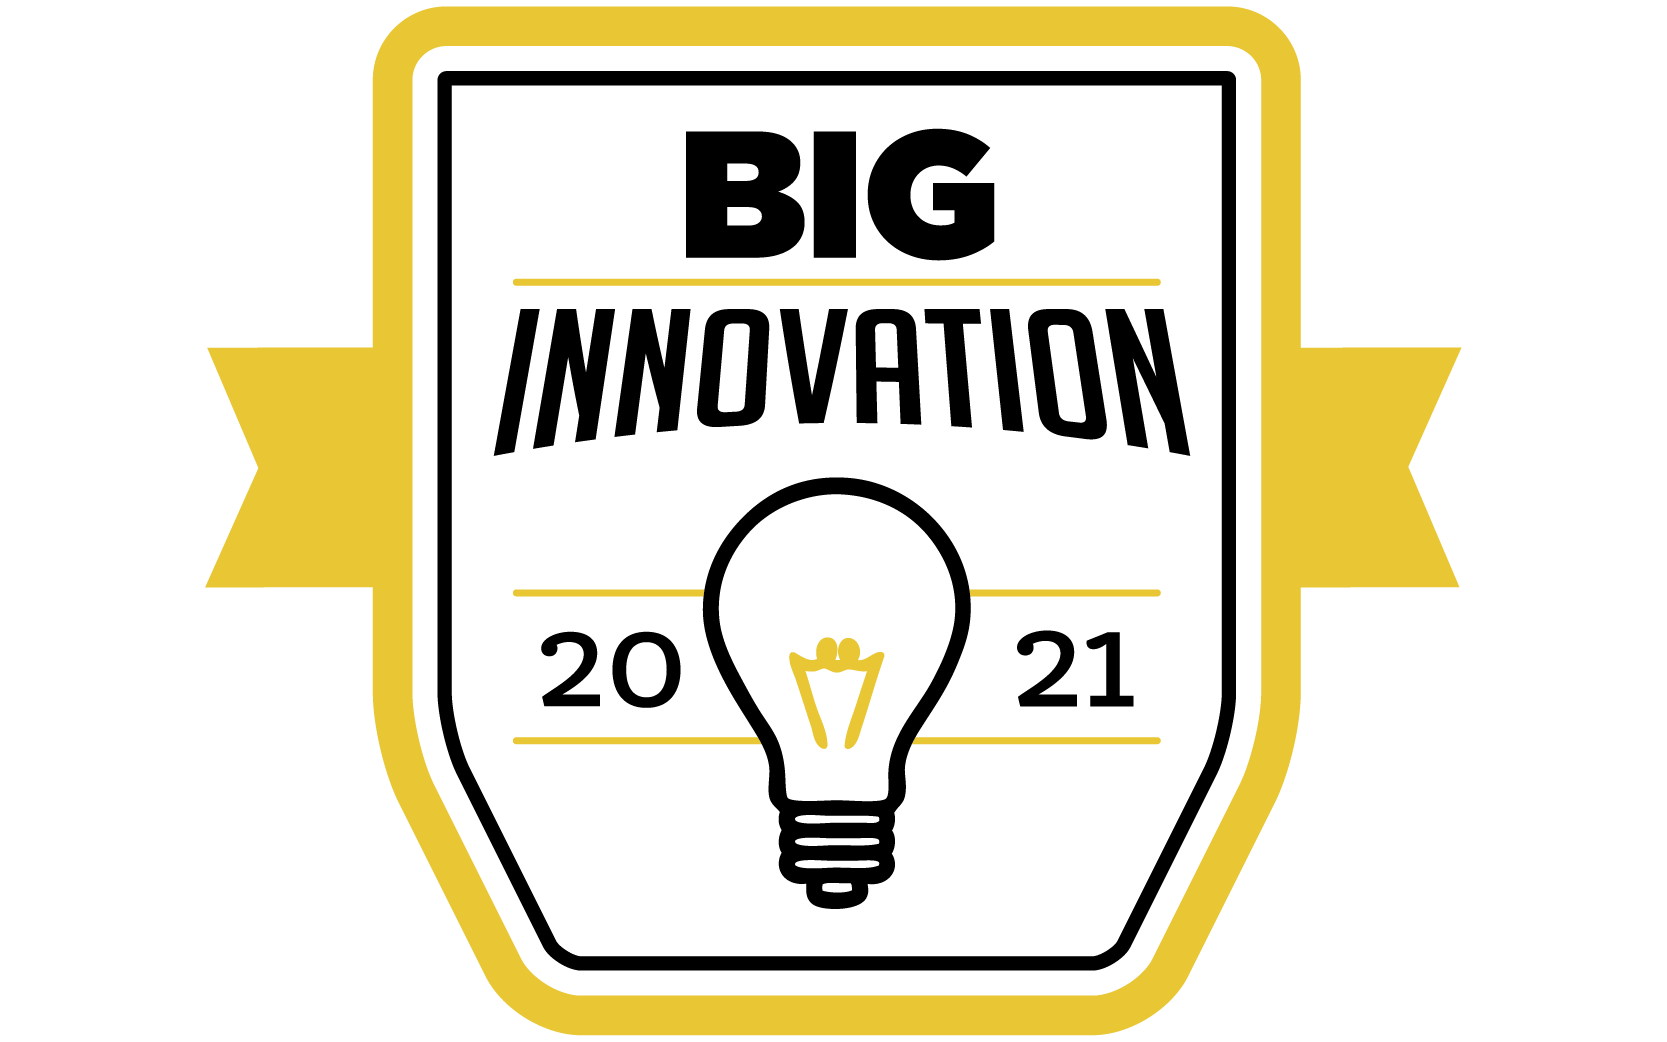 Big Innovation 2021 Award